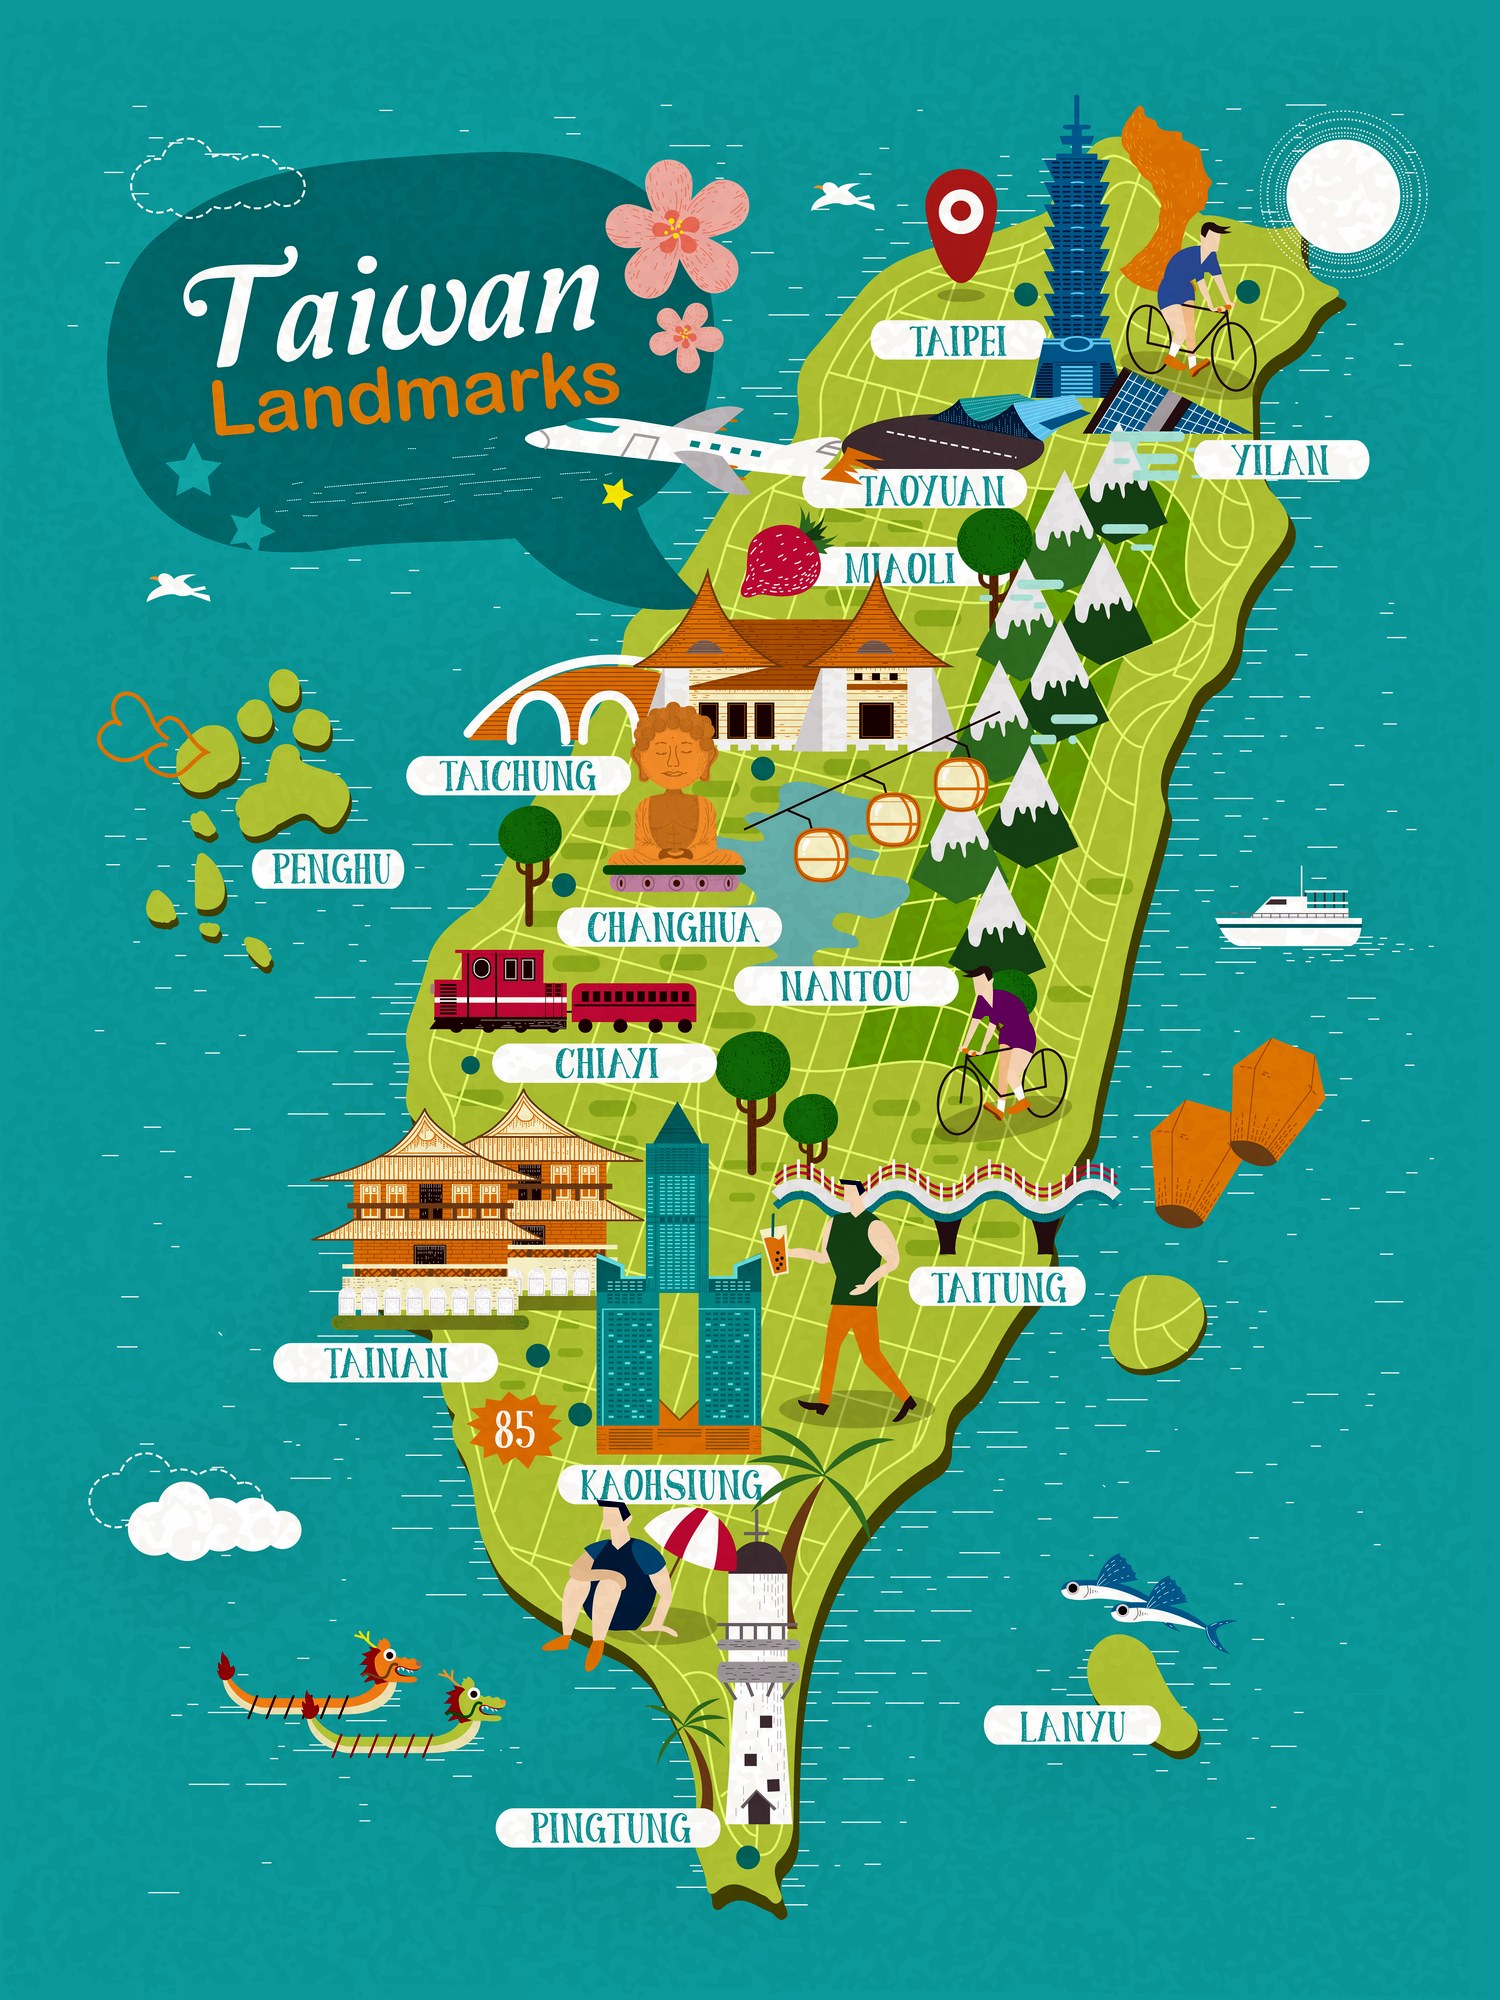 taiwan tourist data plan